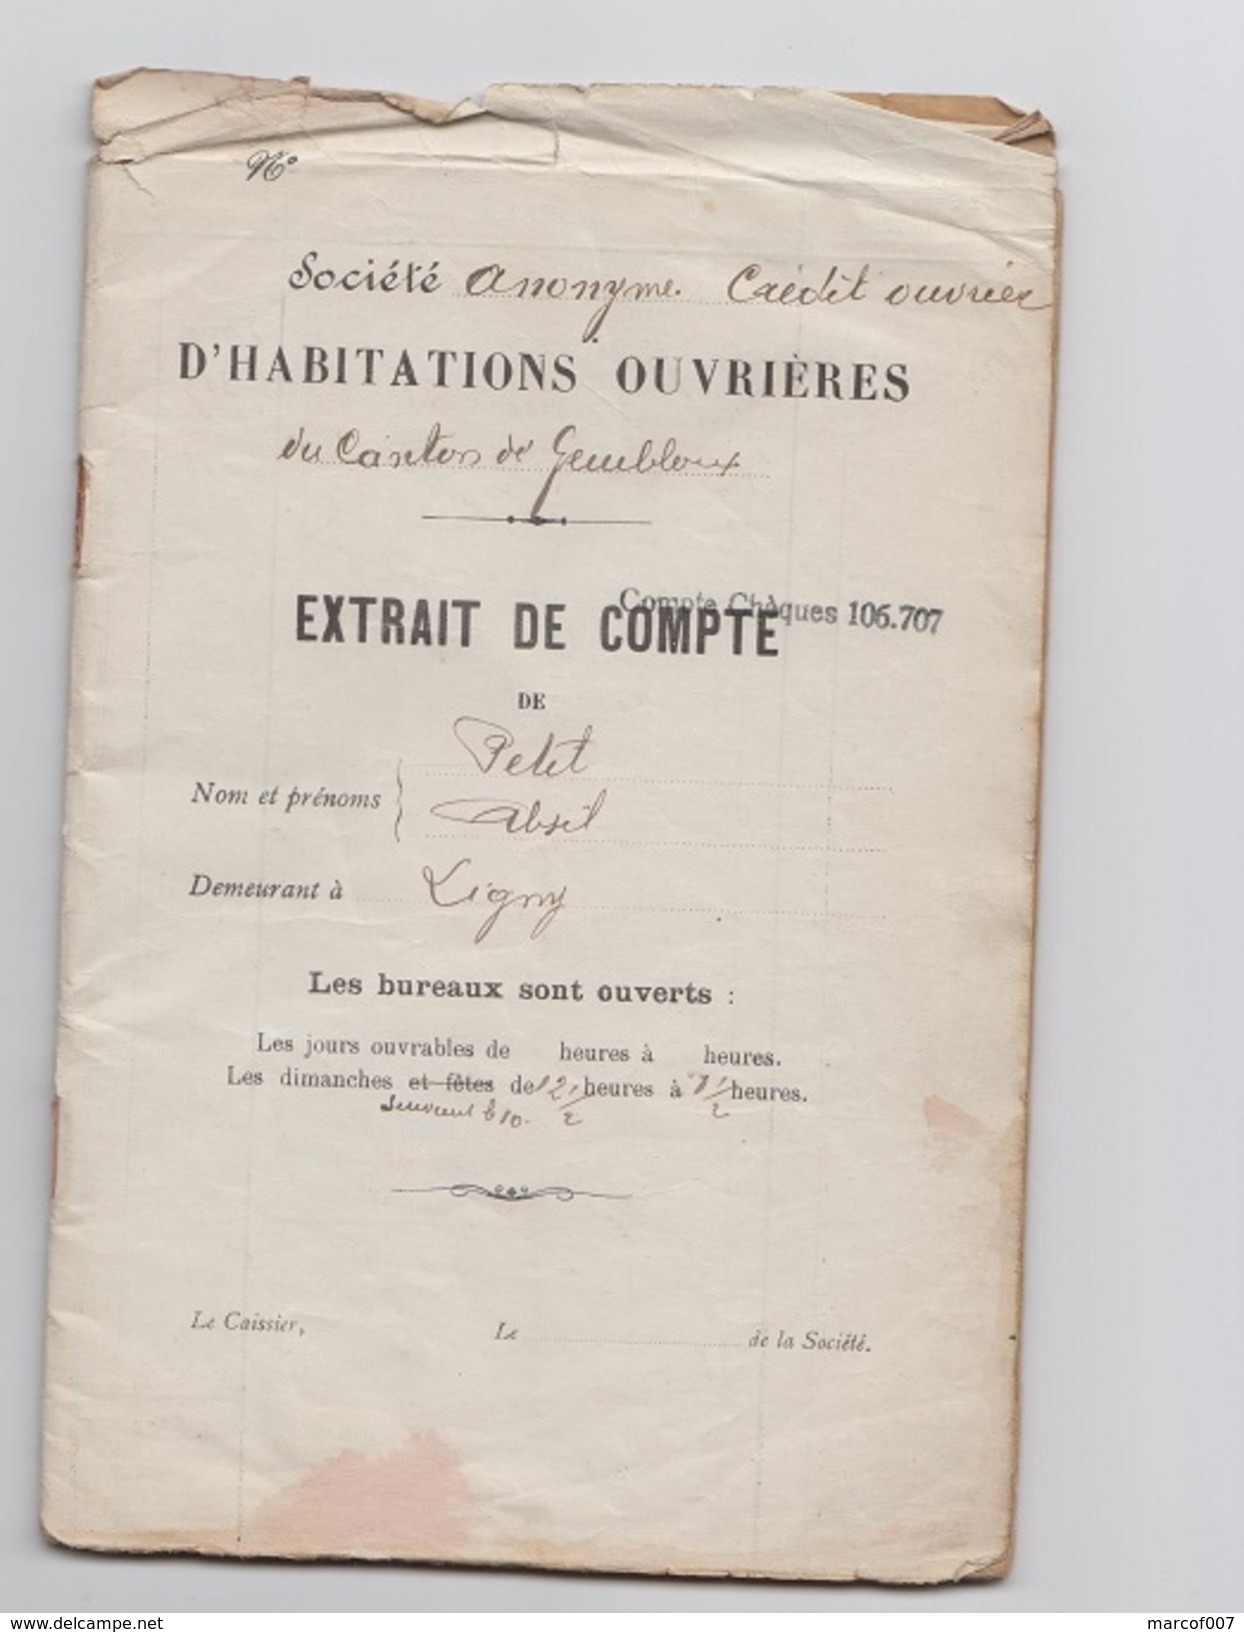 1923 - Societe Anonyme Credit Ouvrier - Extrait De Compte - Mr PETIT - LIGNY - Bank En Verzekering